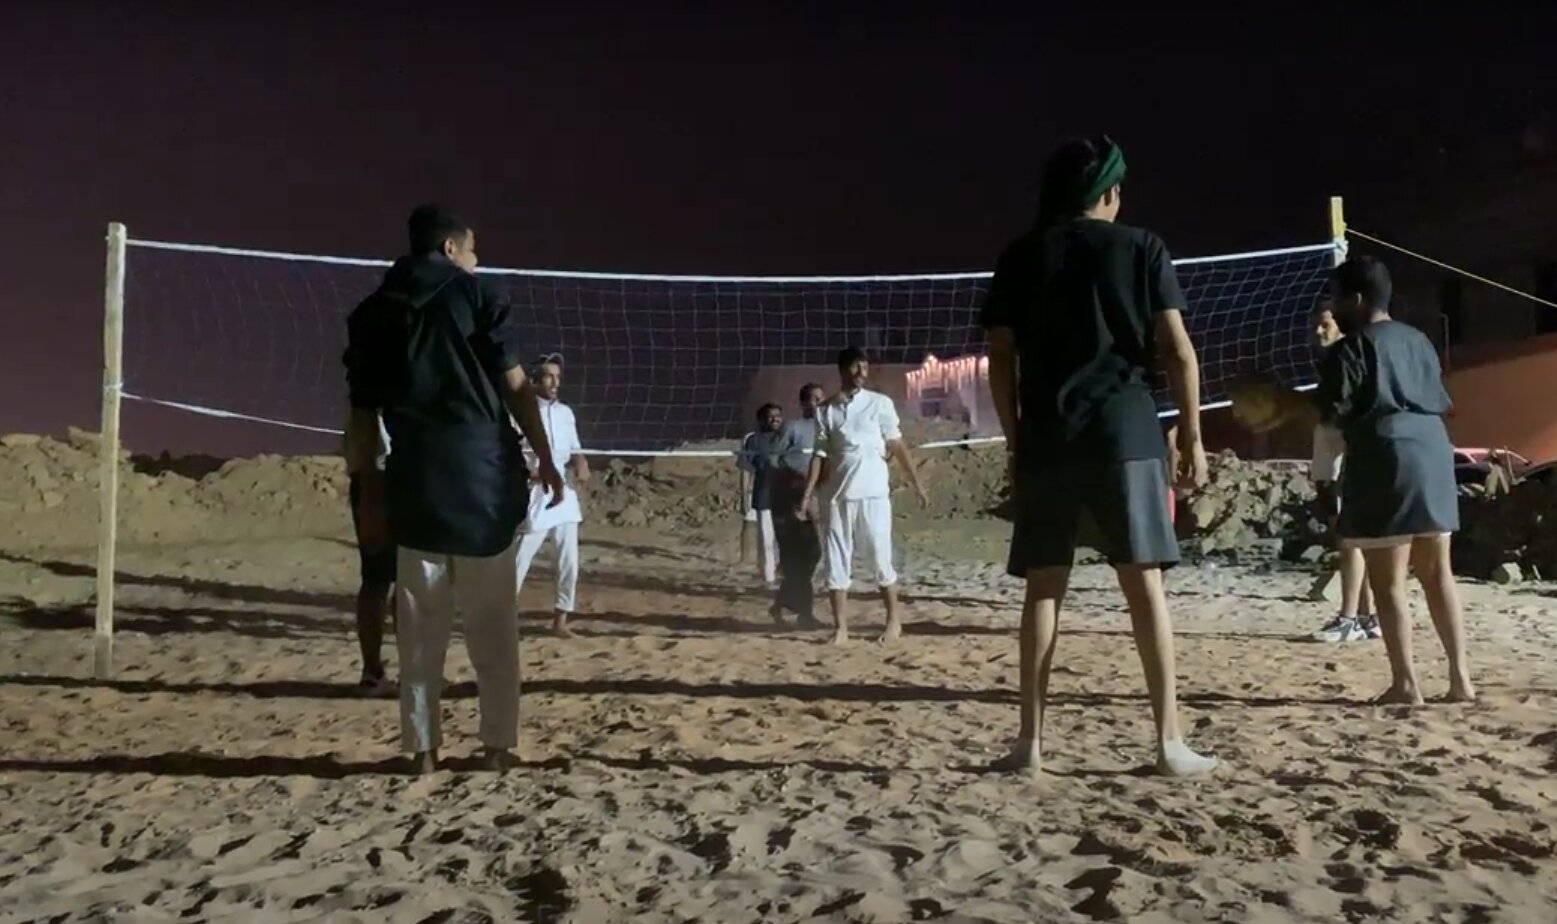 الكرة الطائرة هي لعبة موسمية يلعبها السعوديون في رمضان (اندبندنت عربية)